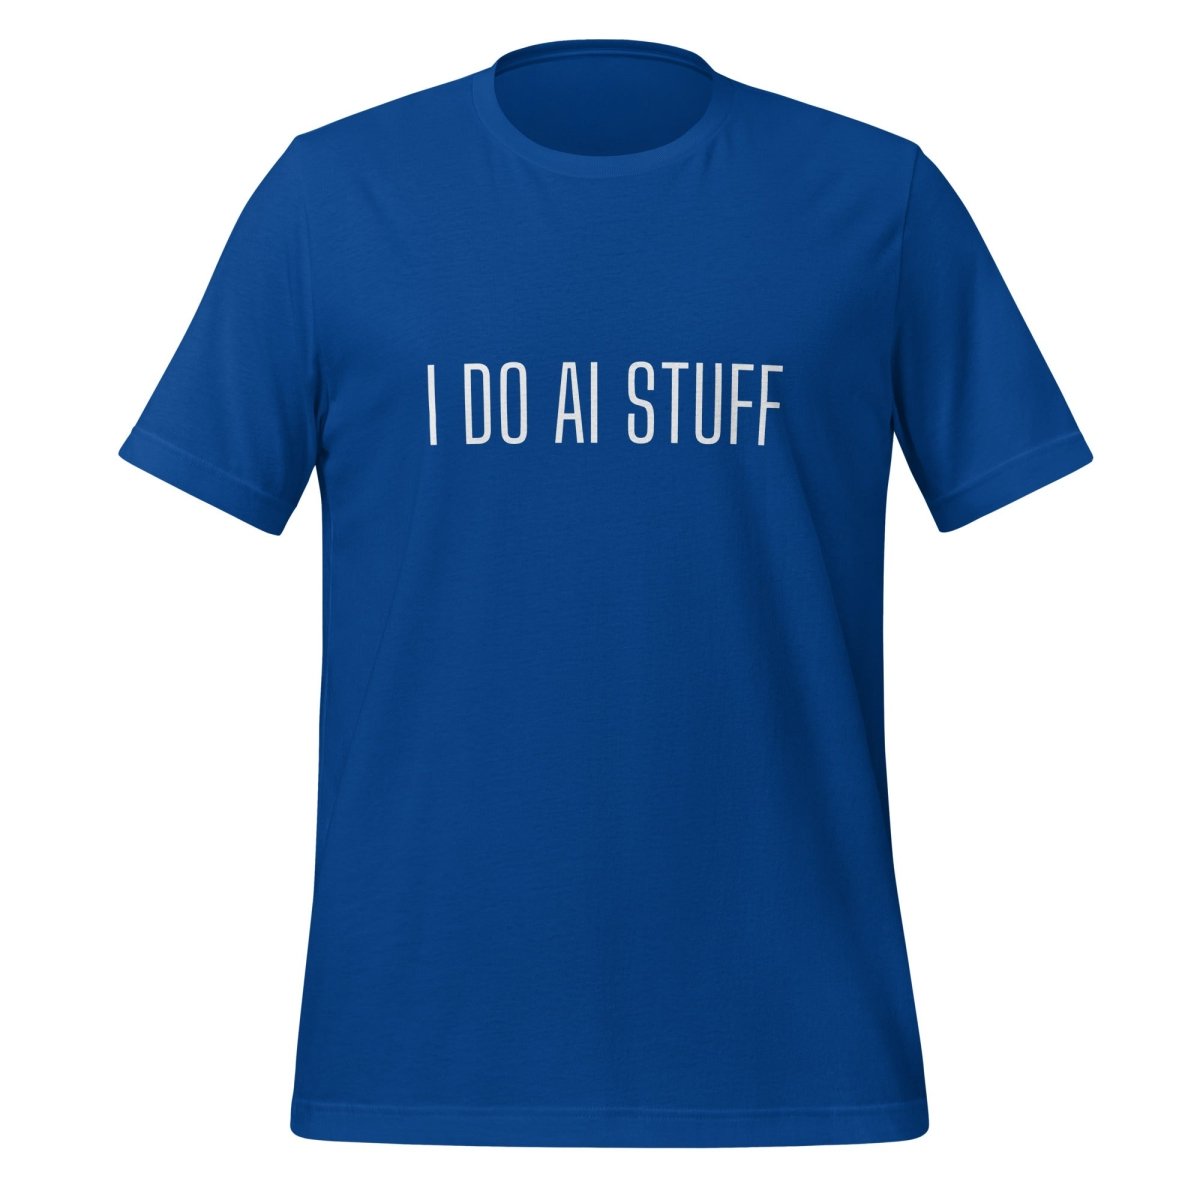 I Do AI Stuff T - Shirt 3 (unisex) - True Royal - AI Store